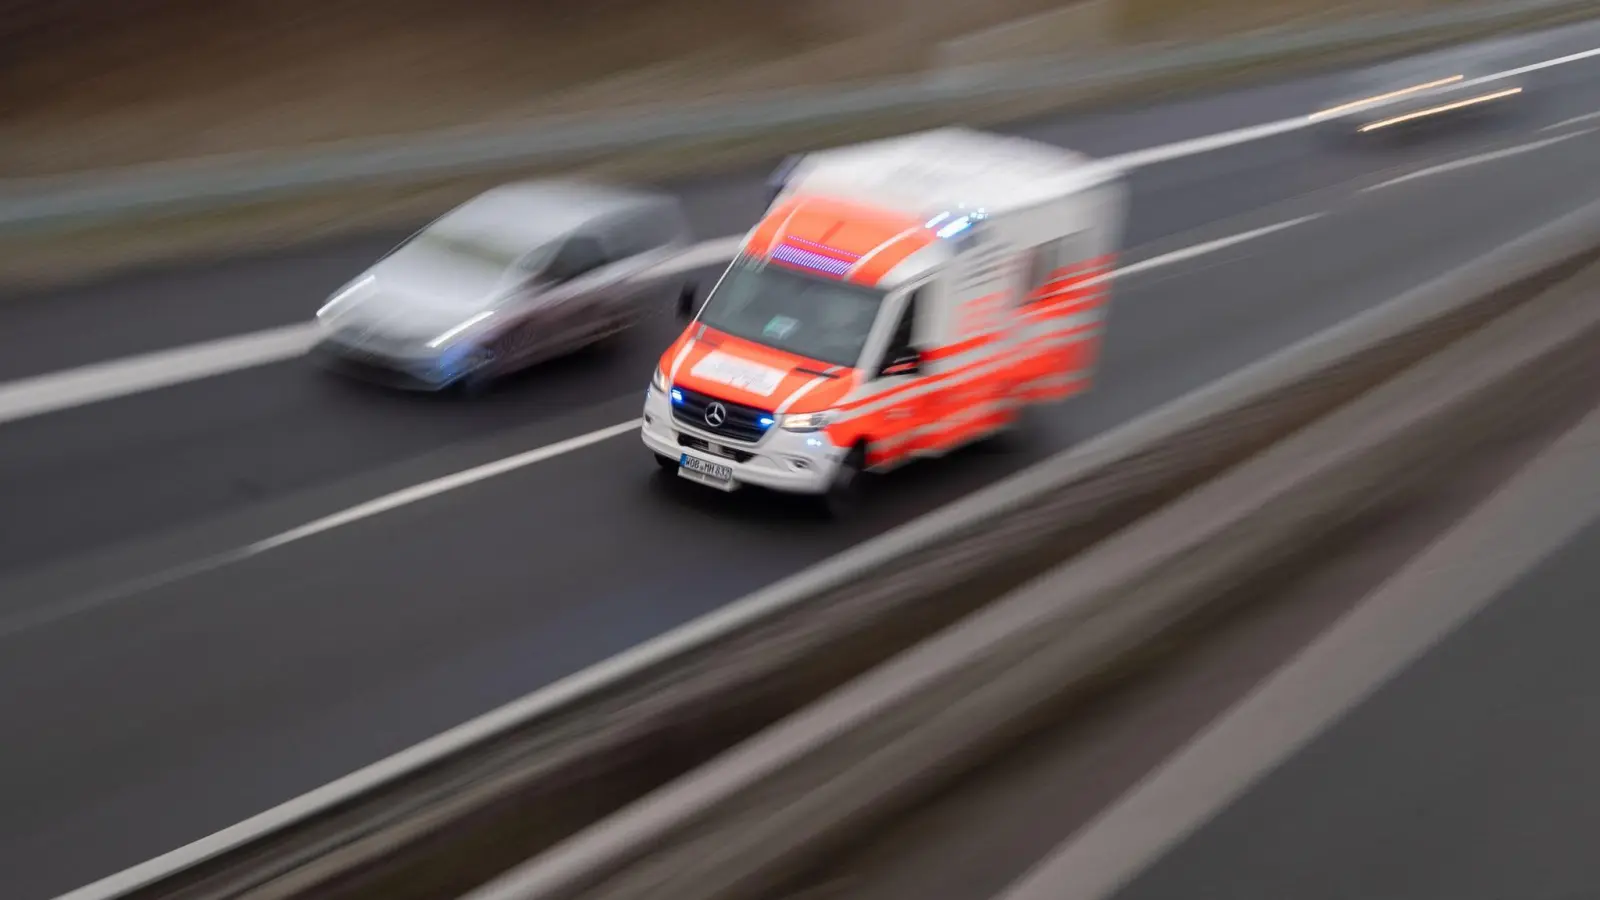 Fahrer unverletzt: Schreck in Lindau: Eisplatte kracht von LKW